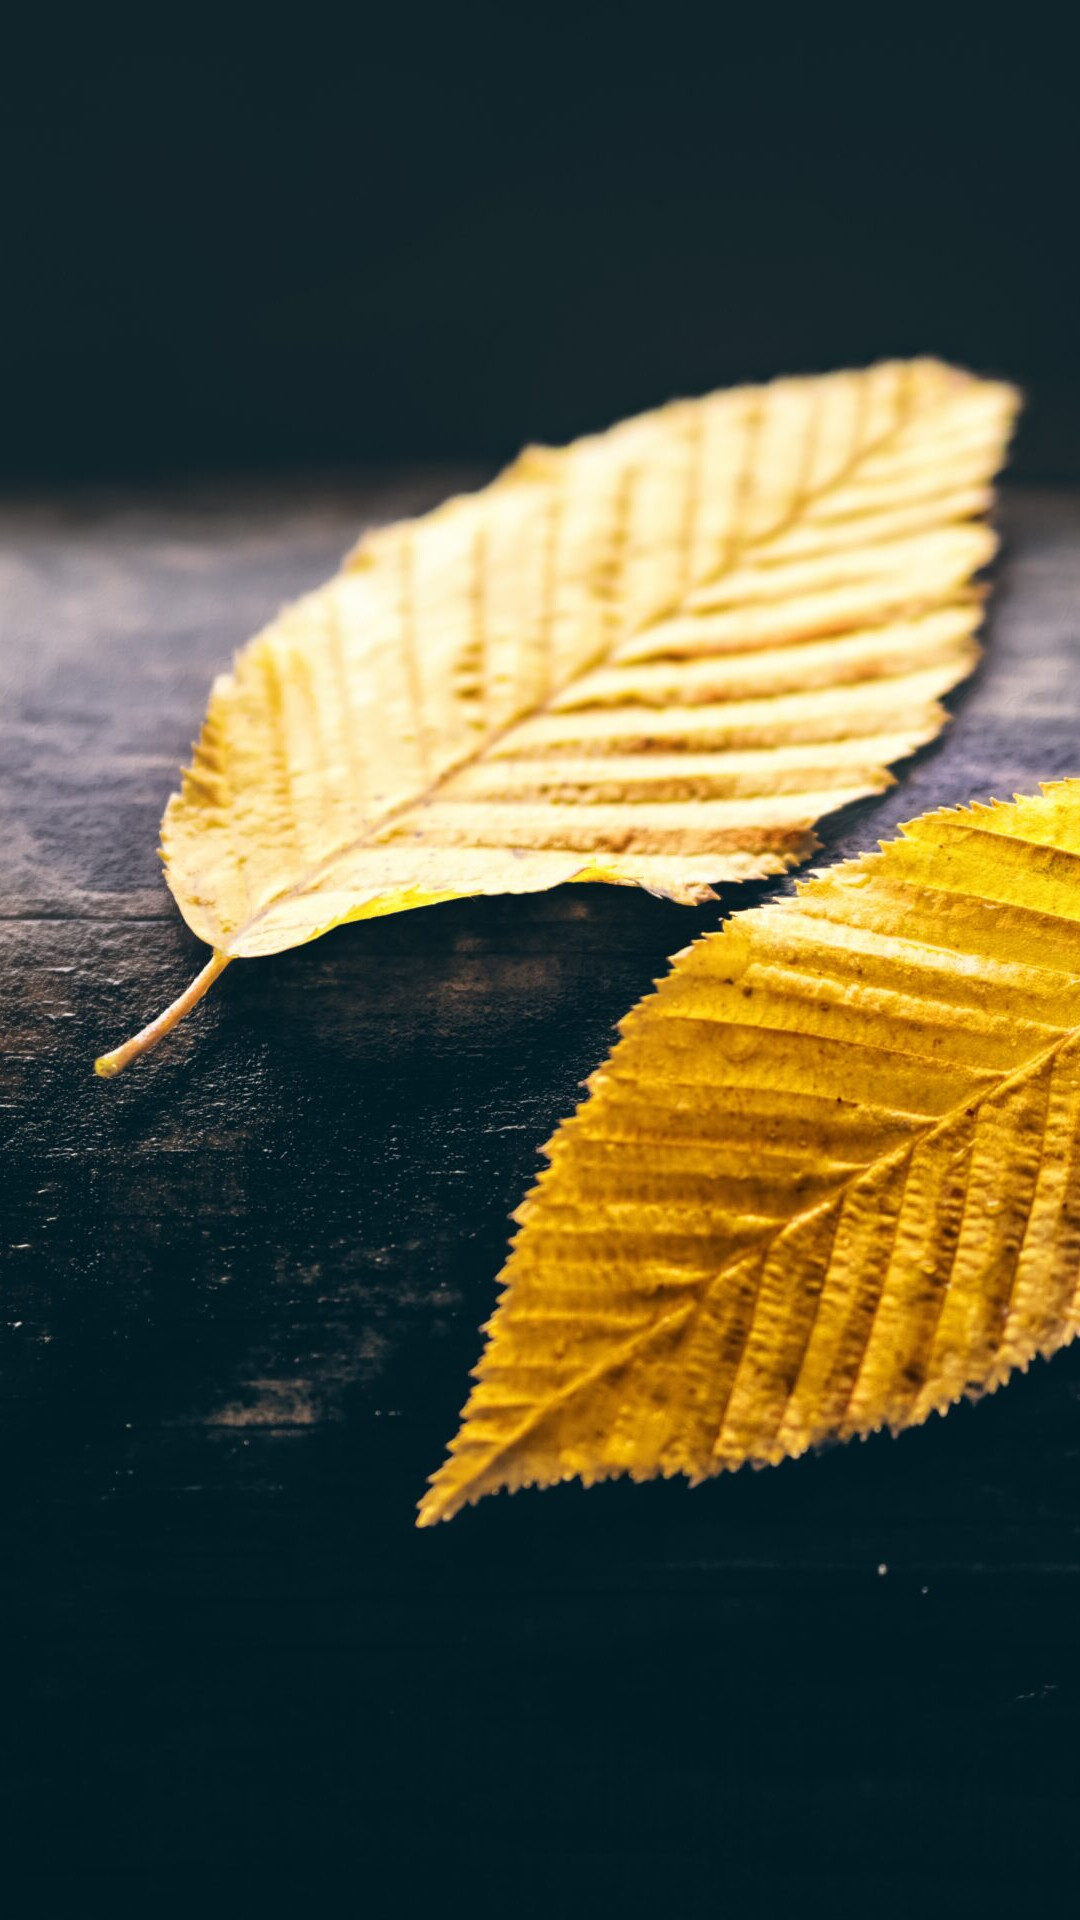 Gold Leaf: Elm foliage turning yellow in fall, Beautiful fall foliage, Chlorophyll breakdown. 1080x1920 Full HD Wallpaper.